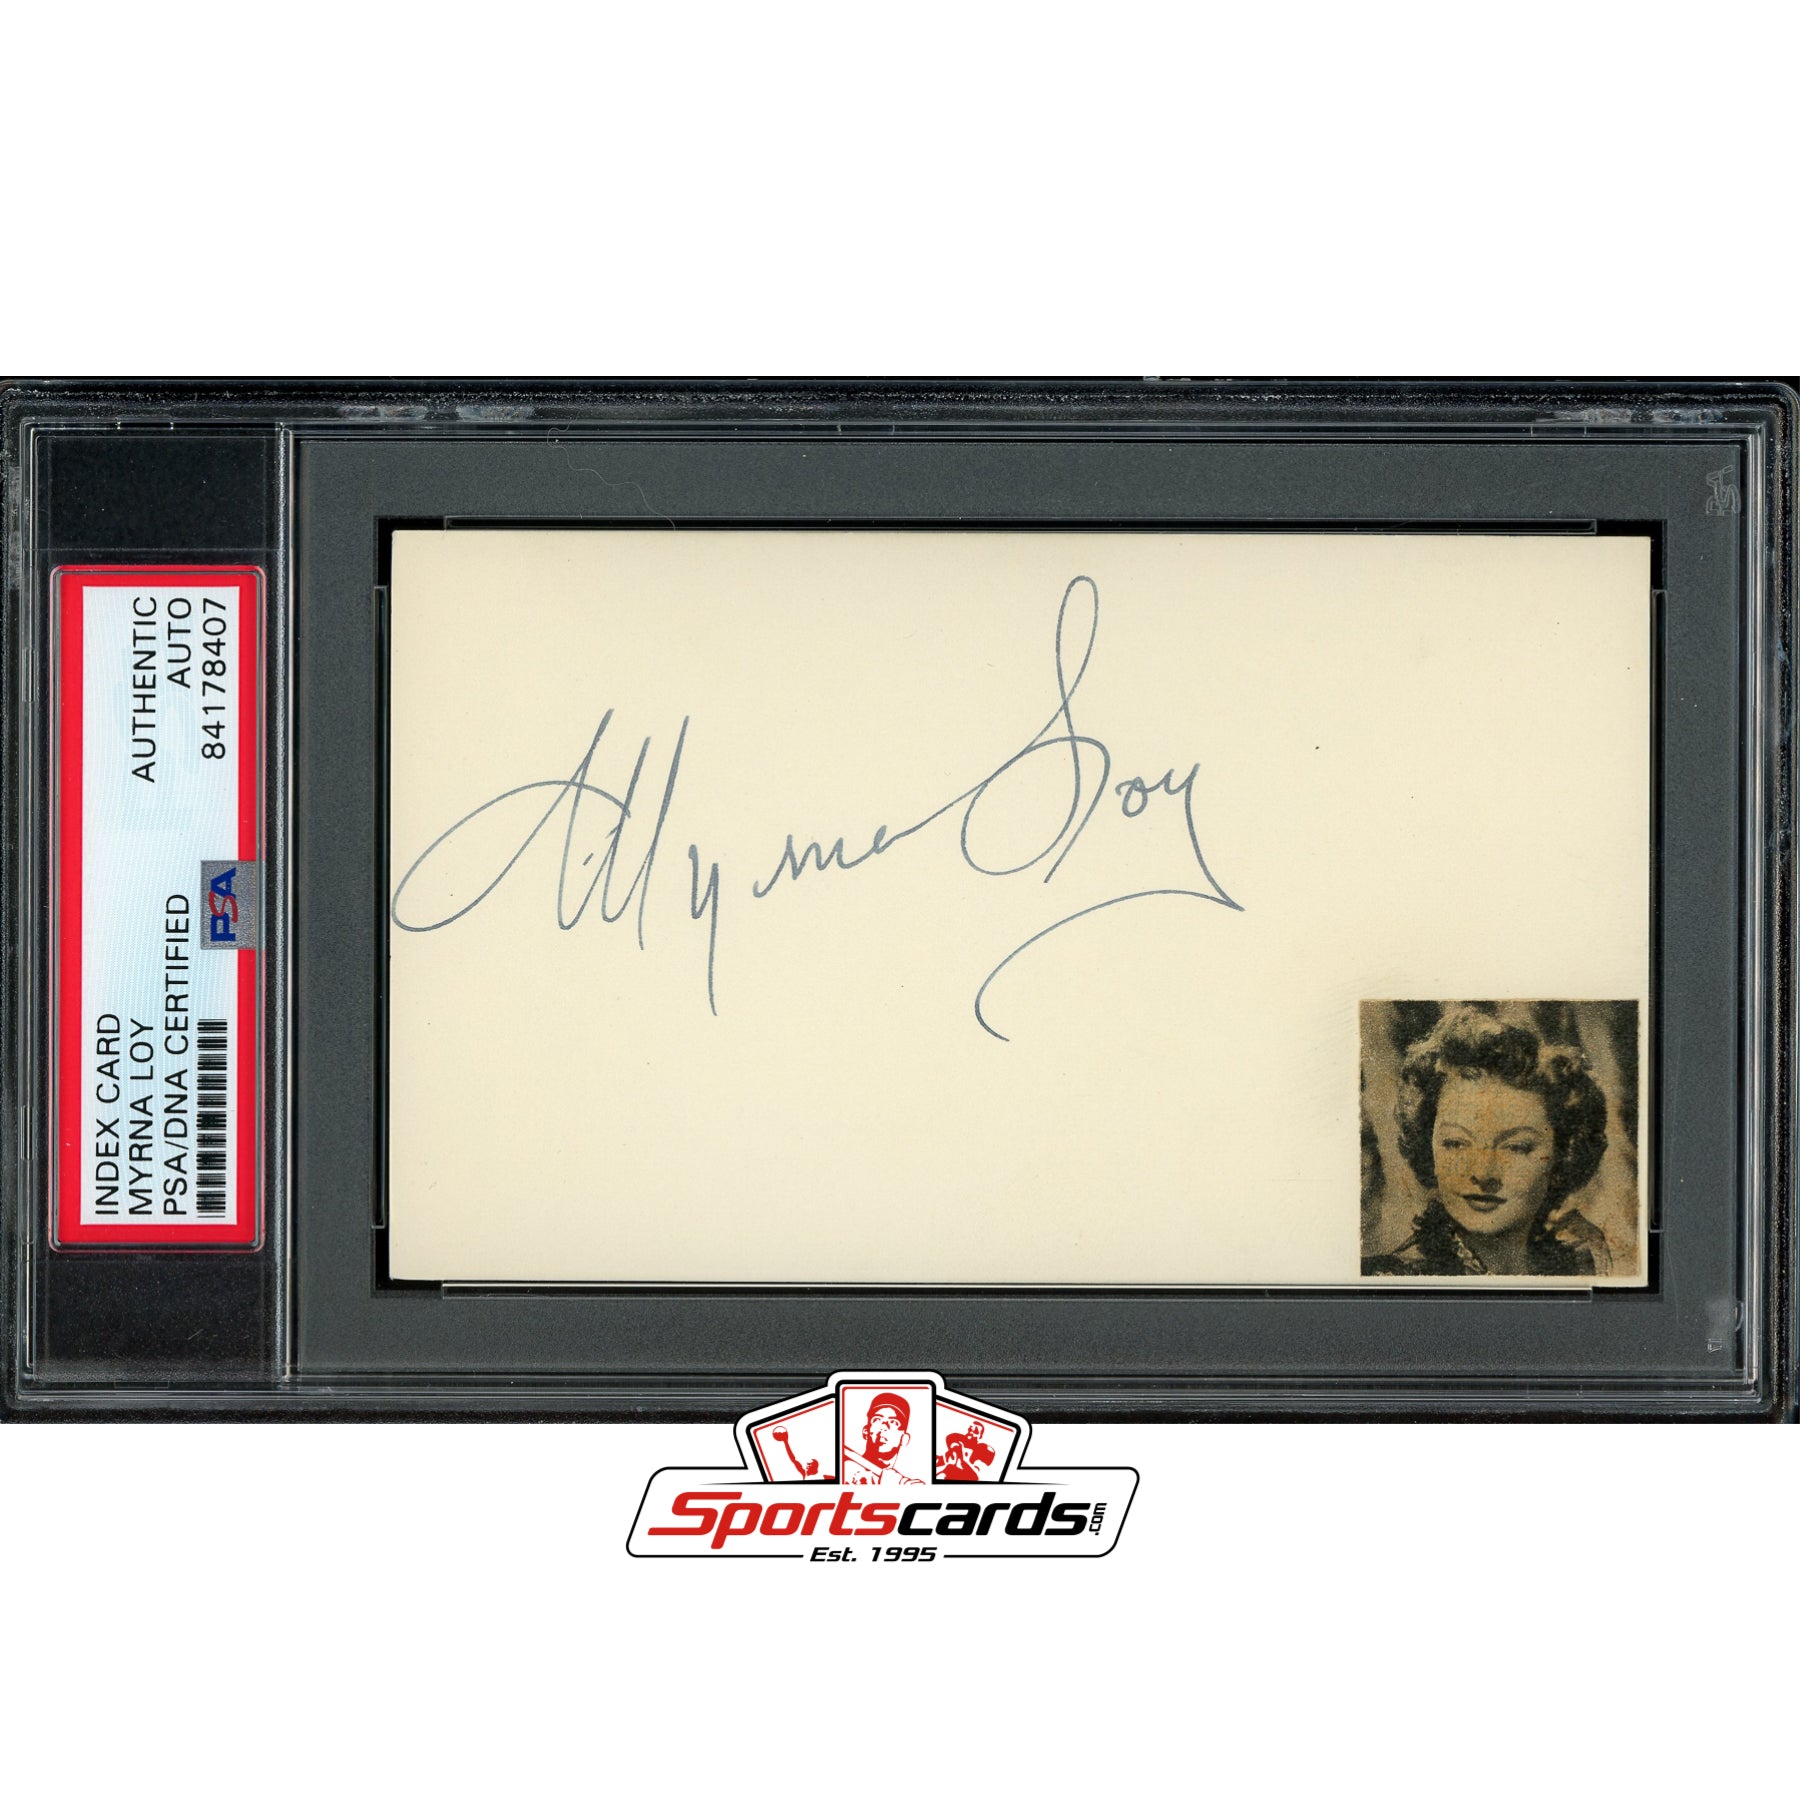 Myrna Loy (d.1993) Signed Auto 3x5 Index Card PSA/DNA Actress The Thin Man